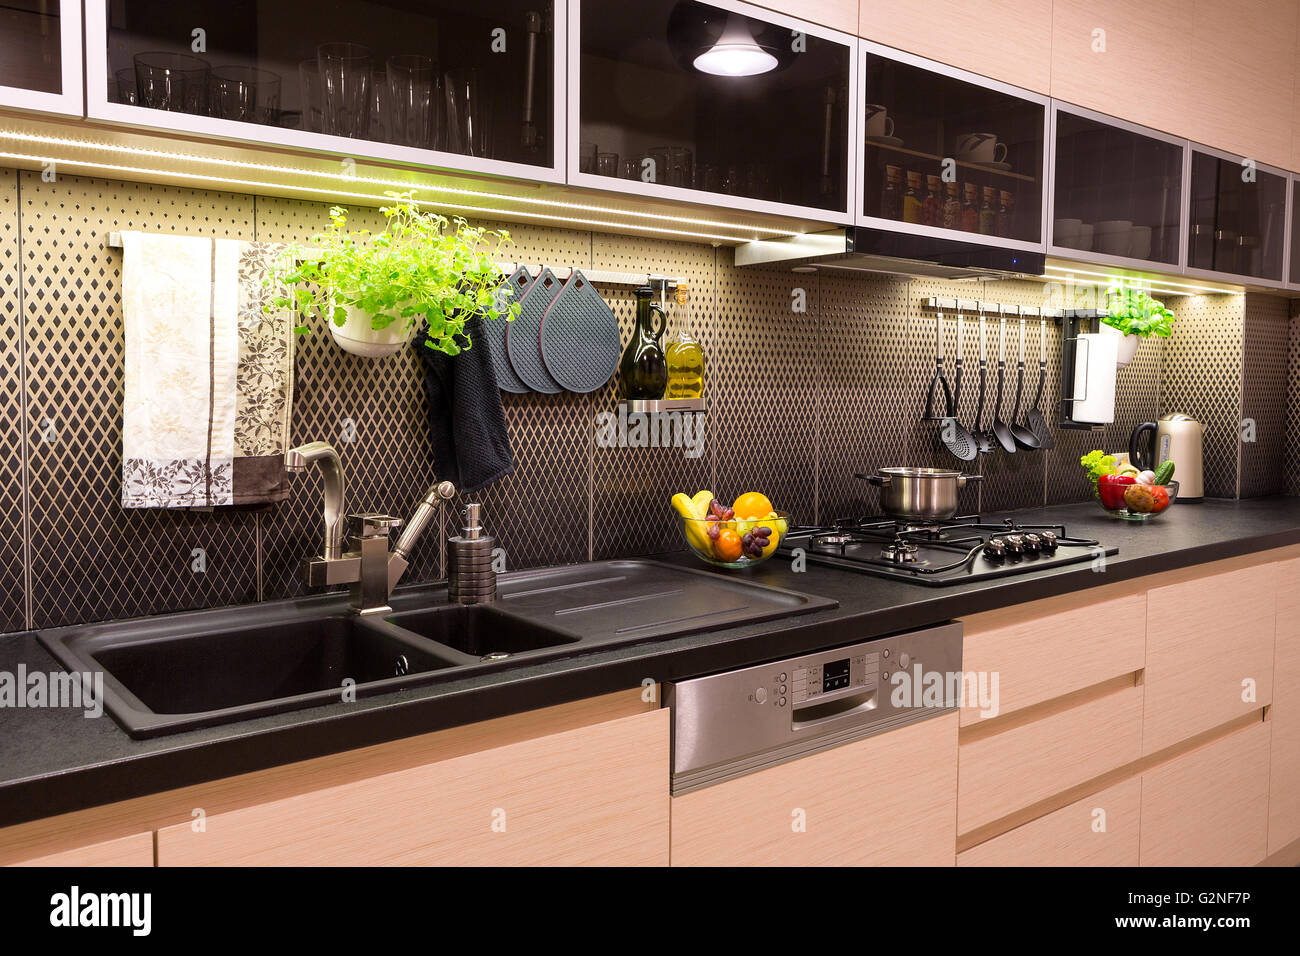 Les légumes, fruits et herbes dans une cuisine contemporaine. Banque D'Images